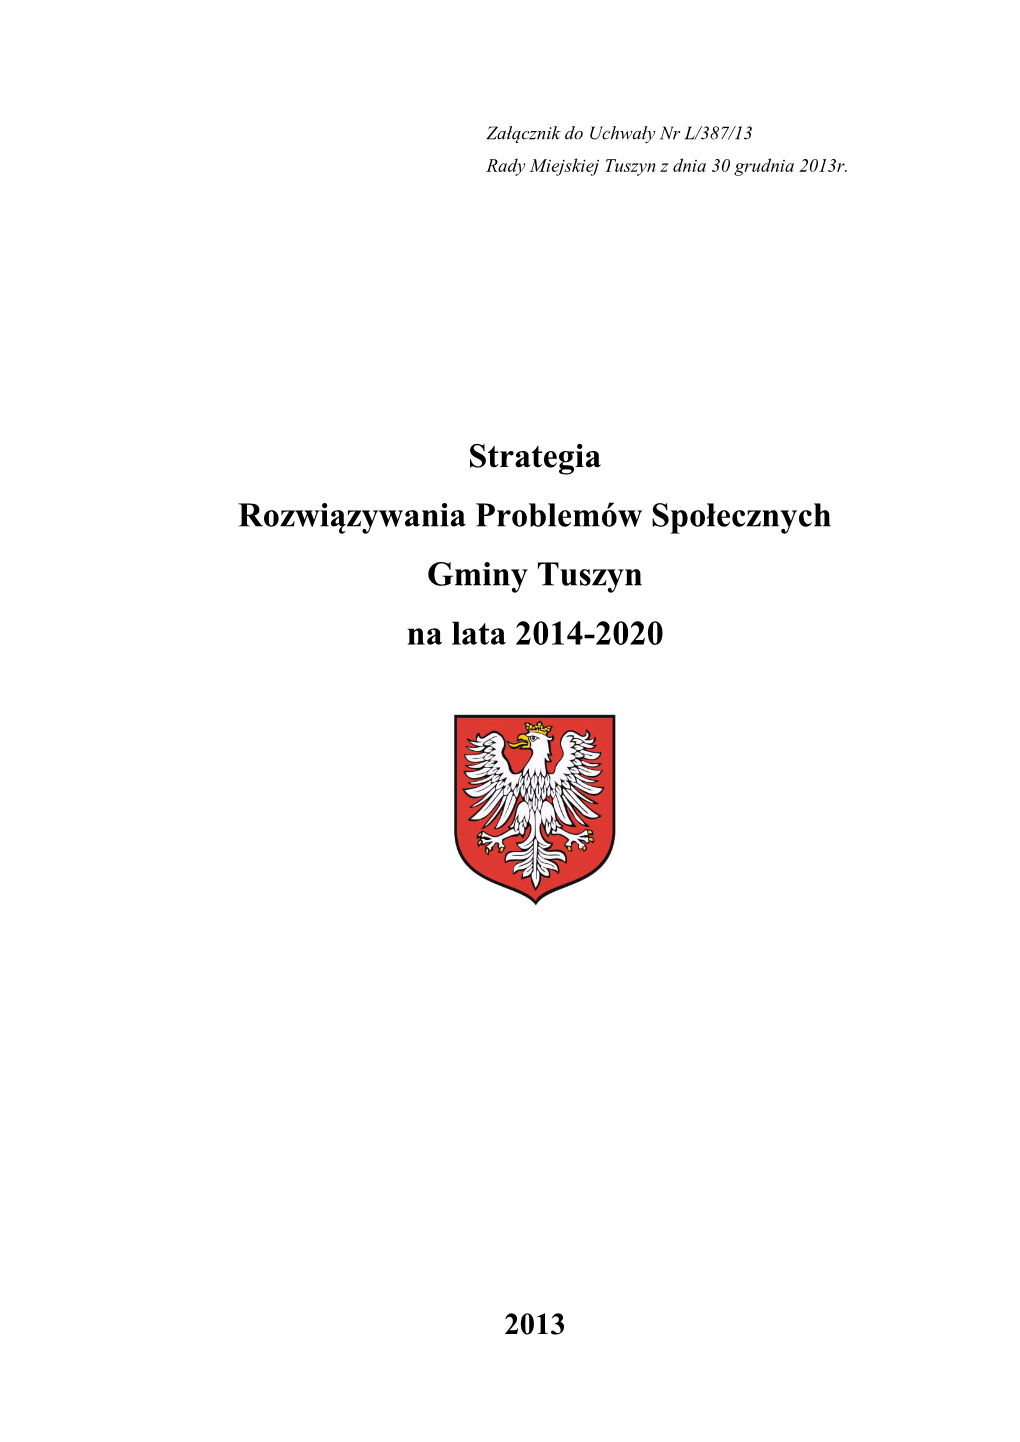 Strategia Rozwiązywania Problemów Społecznych Gminy Tuszyn Na Lata 2014-2020